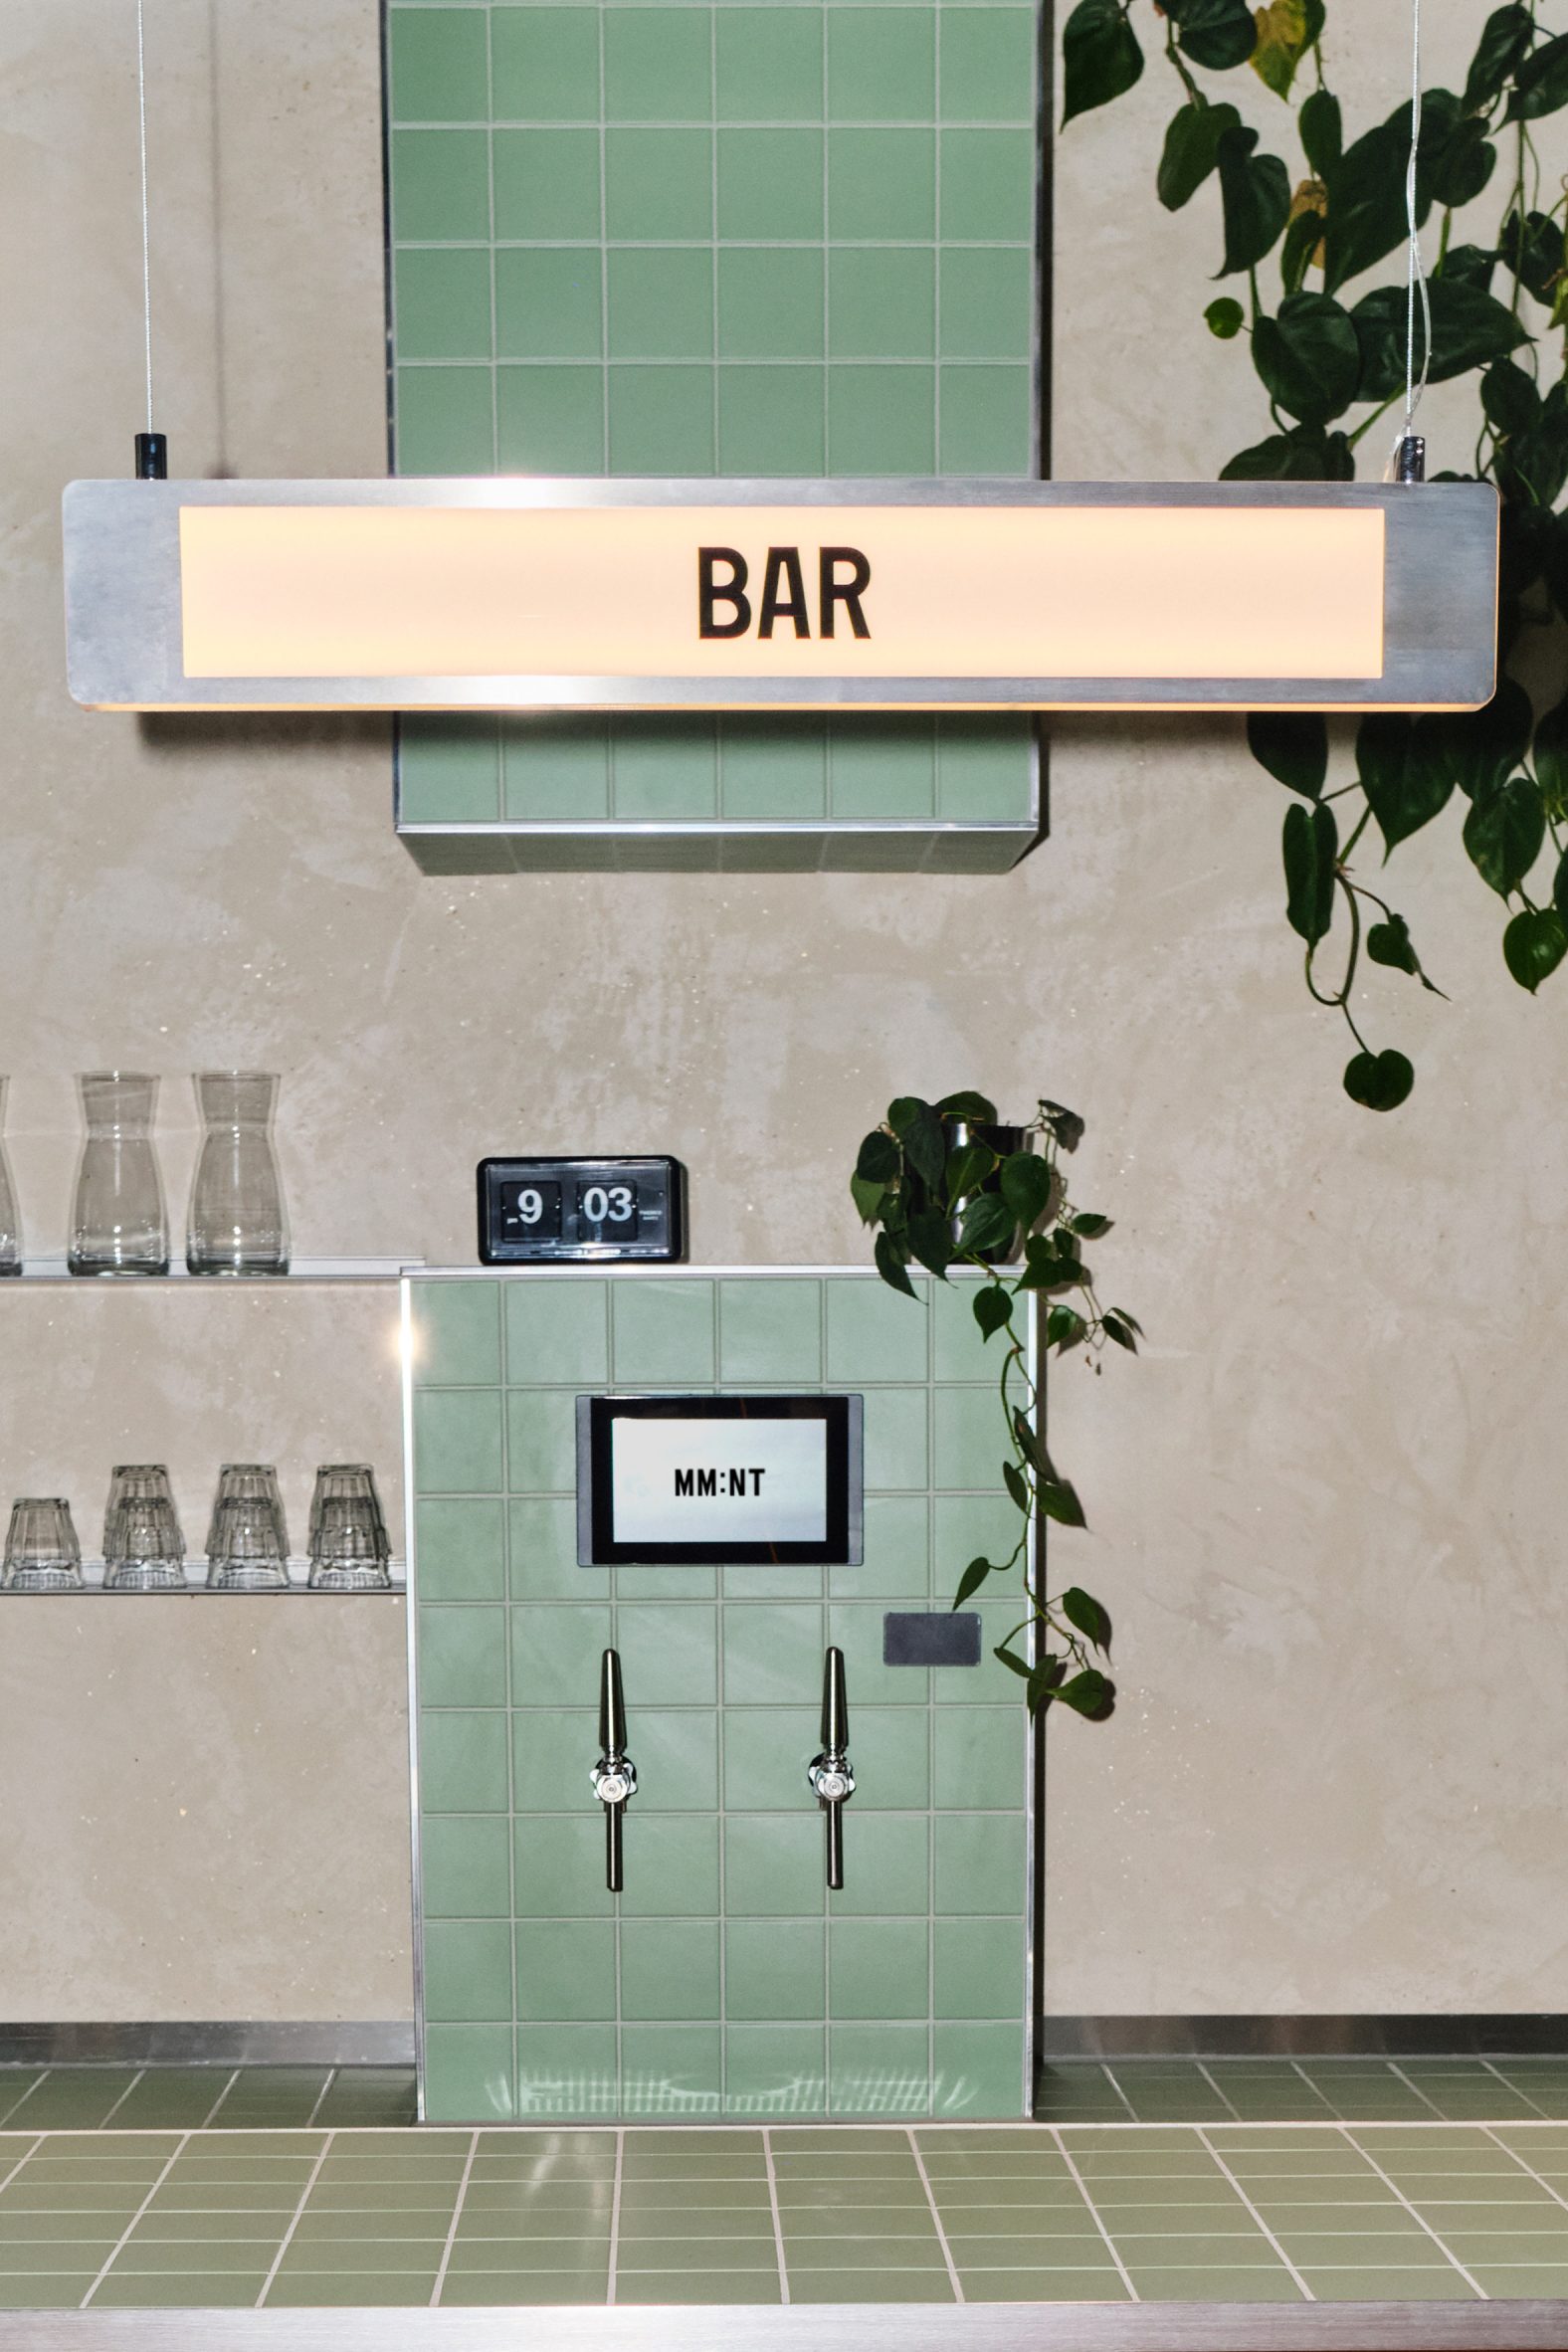 Self-service bar